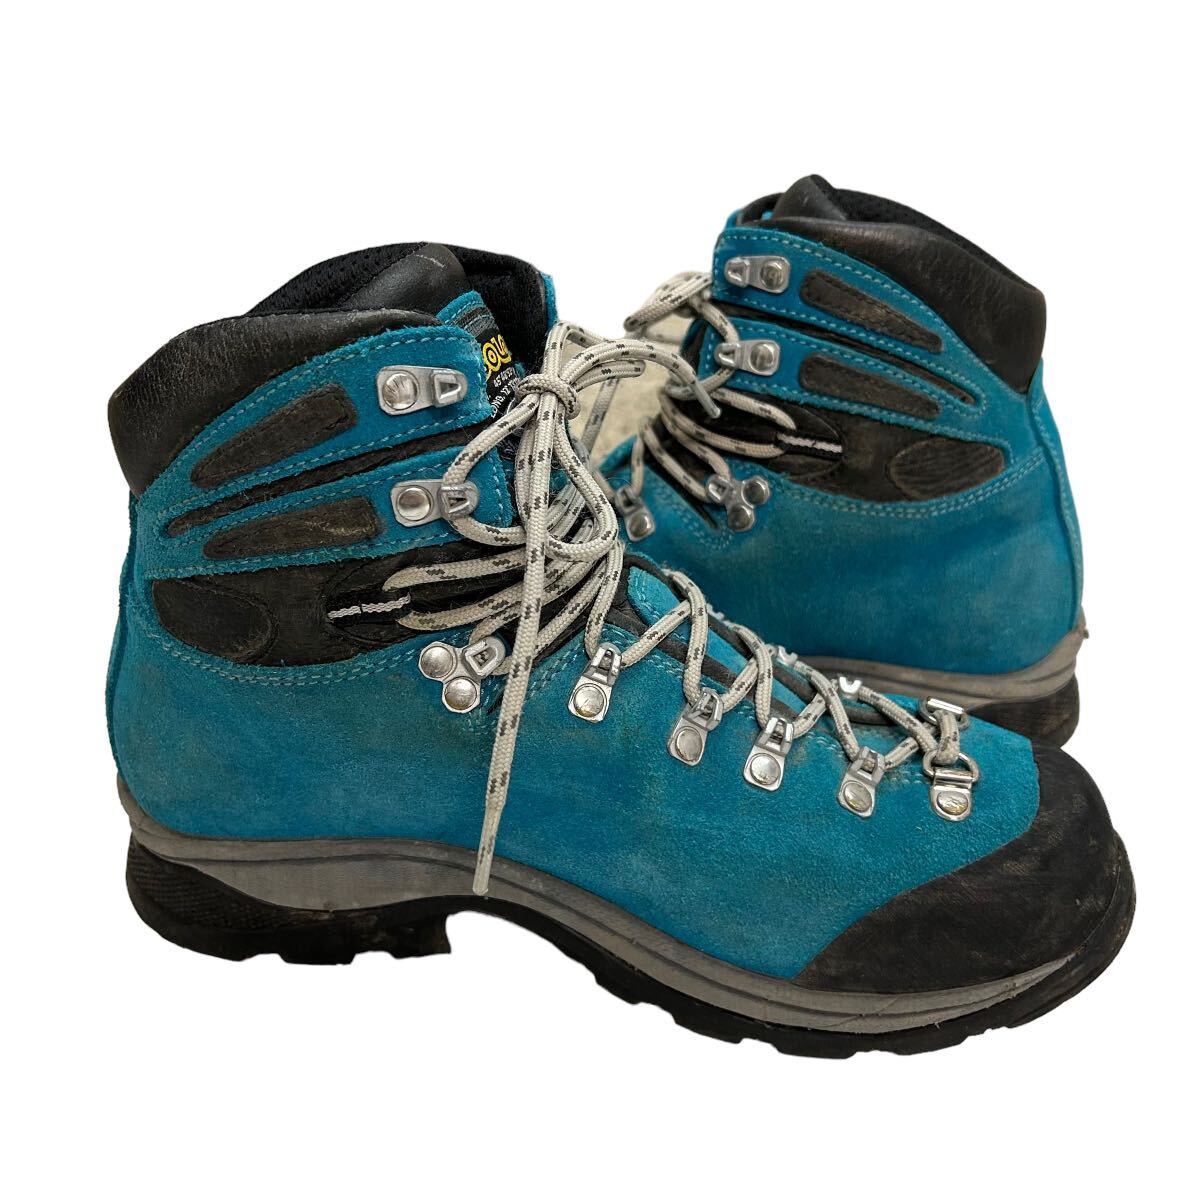 A518 ASOLO アゾロ トレッキングシューズ 登山靴 GORE-TEX ゴアテックス UK5.5 US7 約 24cm ブルーグリーン ブラック ビブラムソール